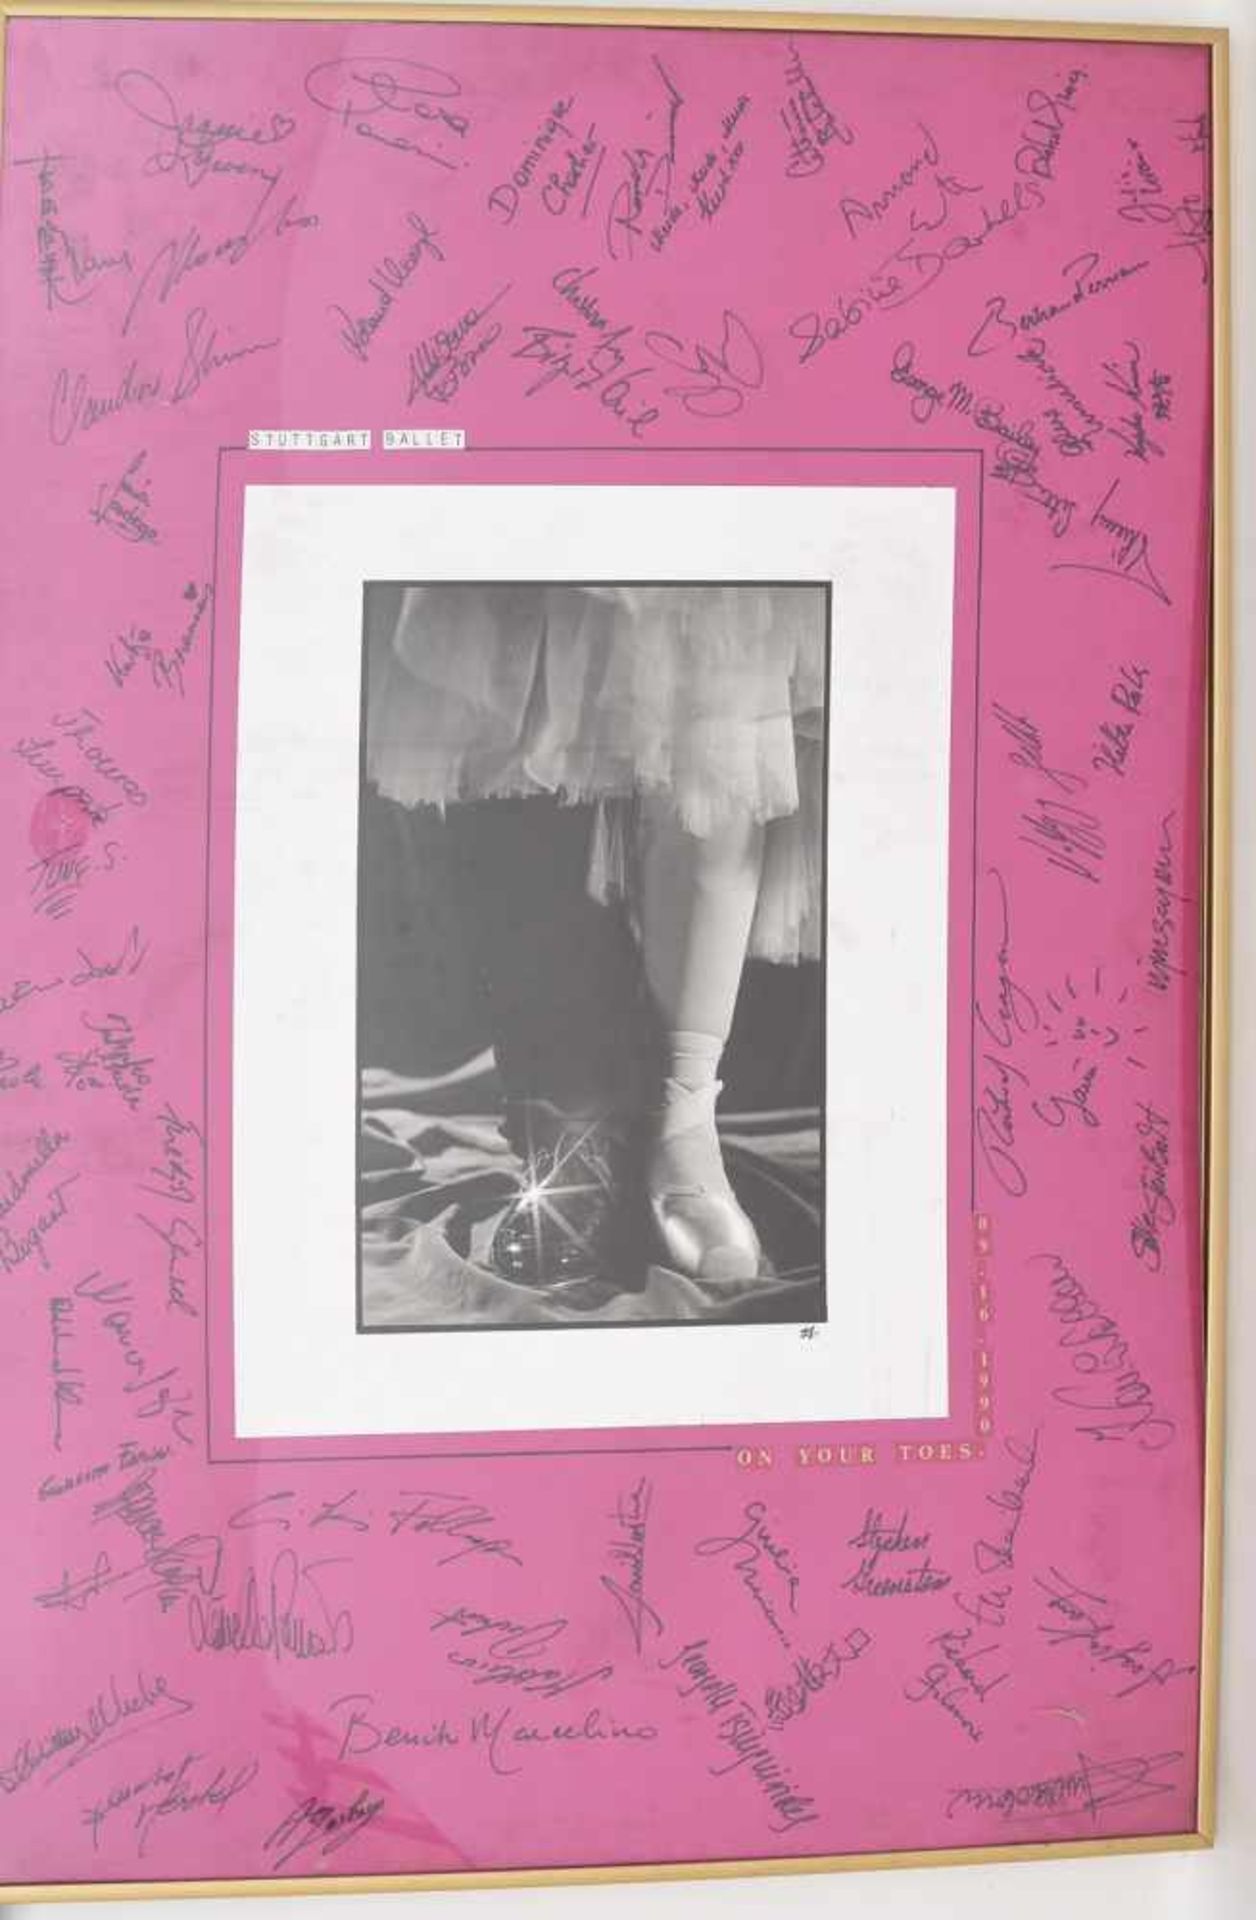 AUTOGRAMM-BILD "STUTTGART BALLET", hinter Glas gerahmt, signiert,1990 Mit zahlreichen Autogrammen - Bild 3 aus 6